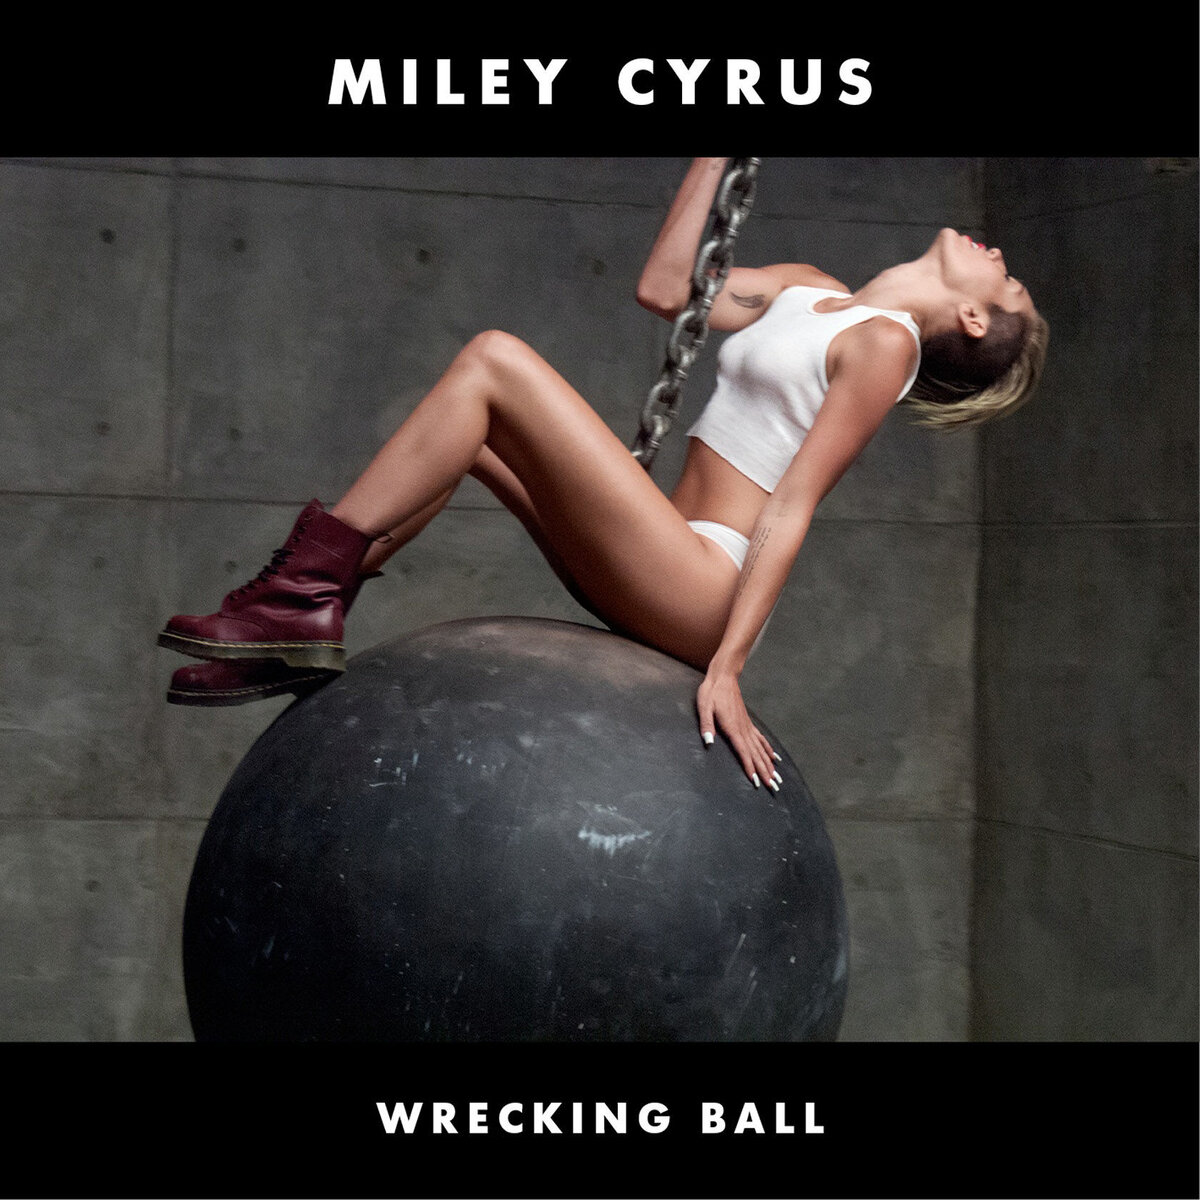 Обложка сингла "Wrecking Ball" американской певицы и актрисы Miley Cyrus